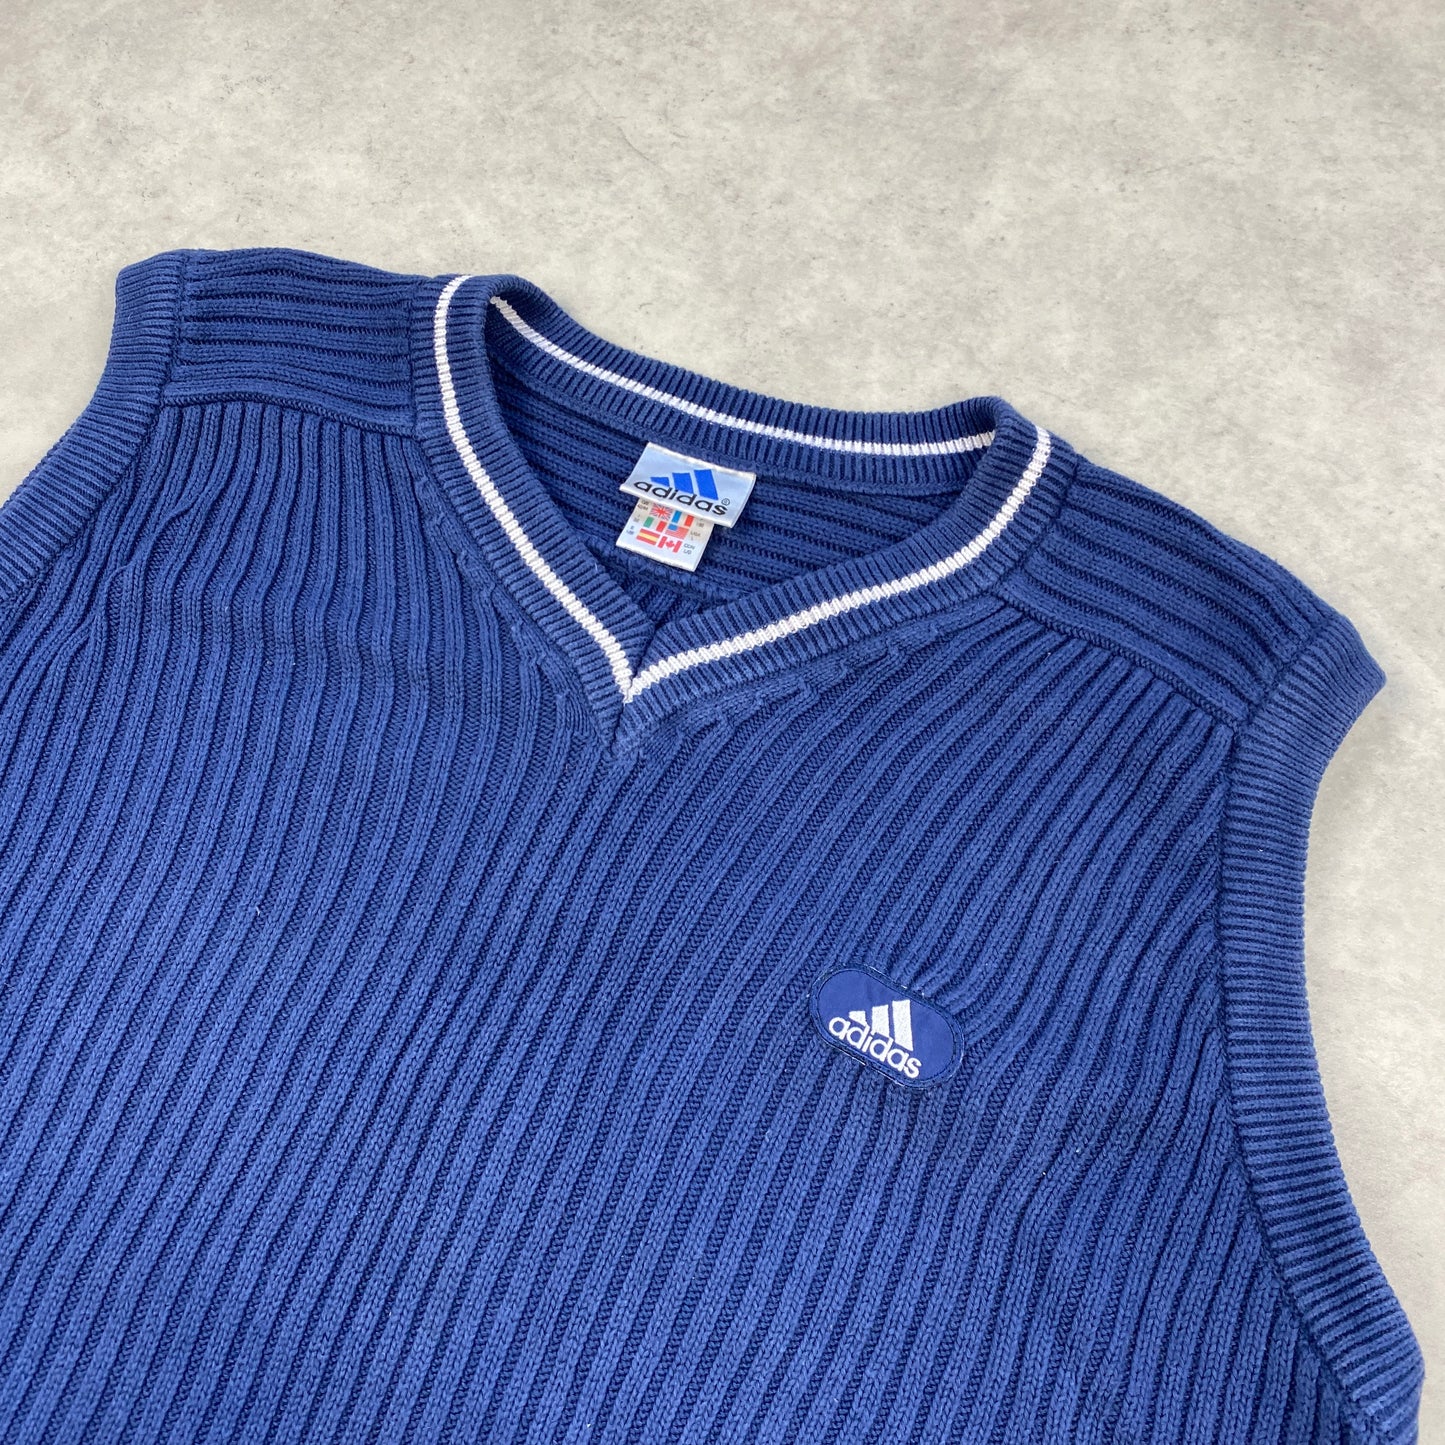 Adidas heavyweight knit vest (L-XL)